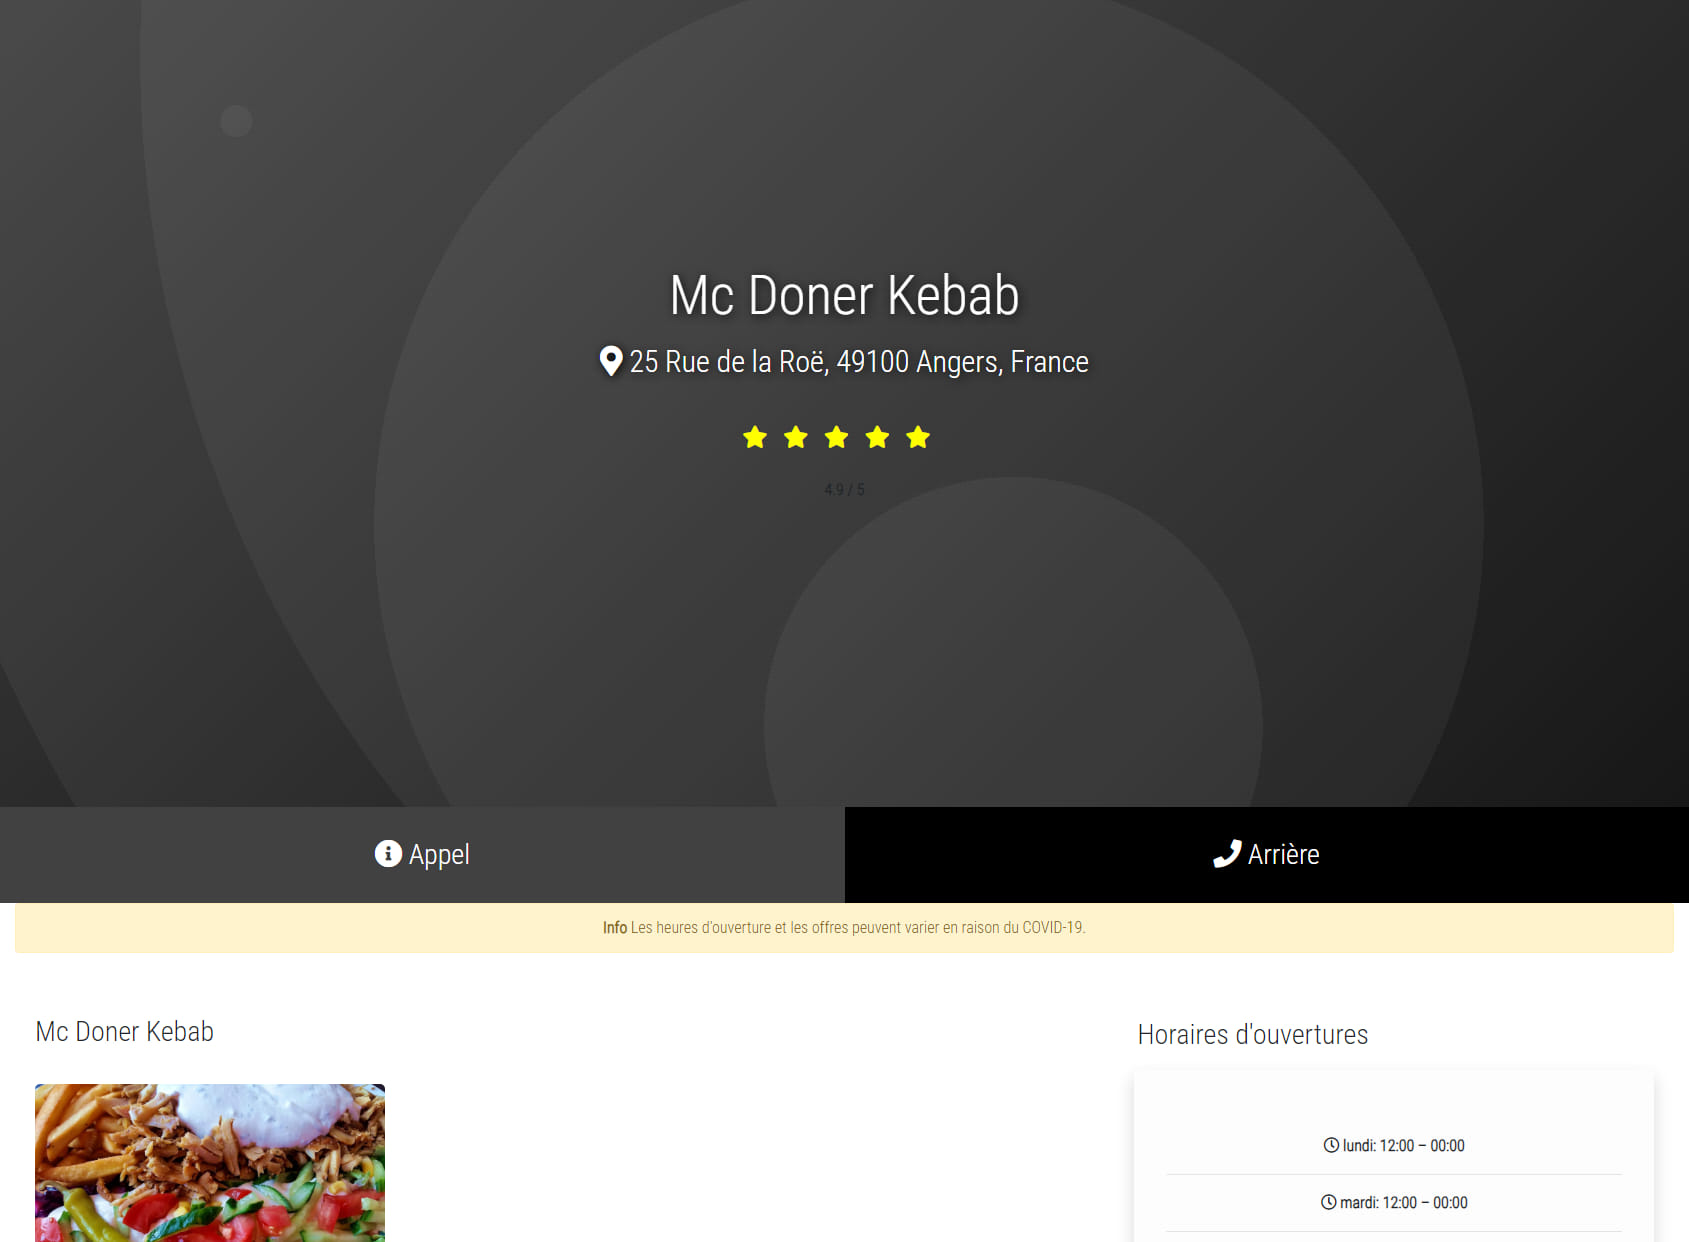 Mc Doner Kebab